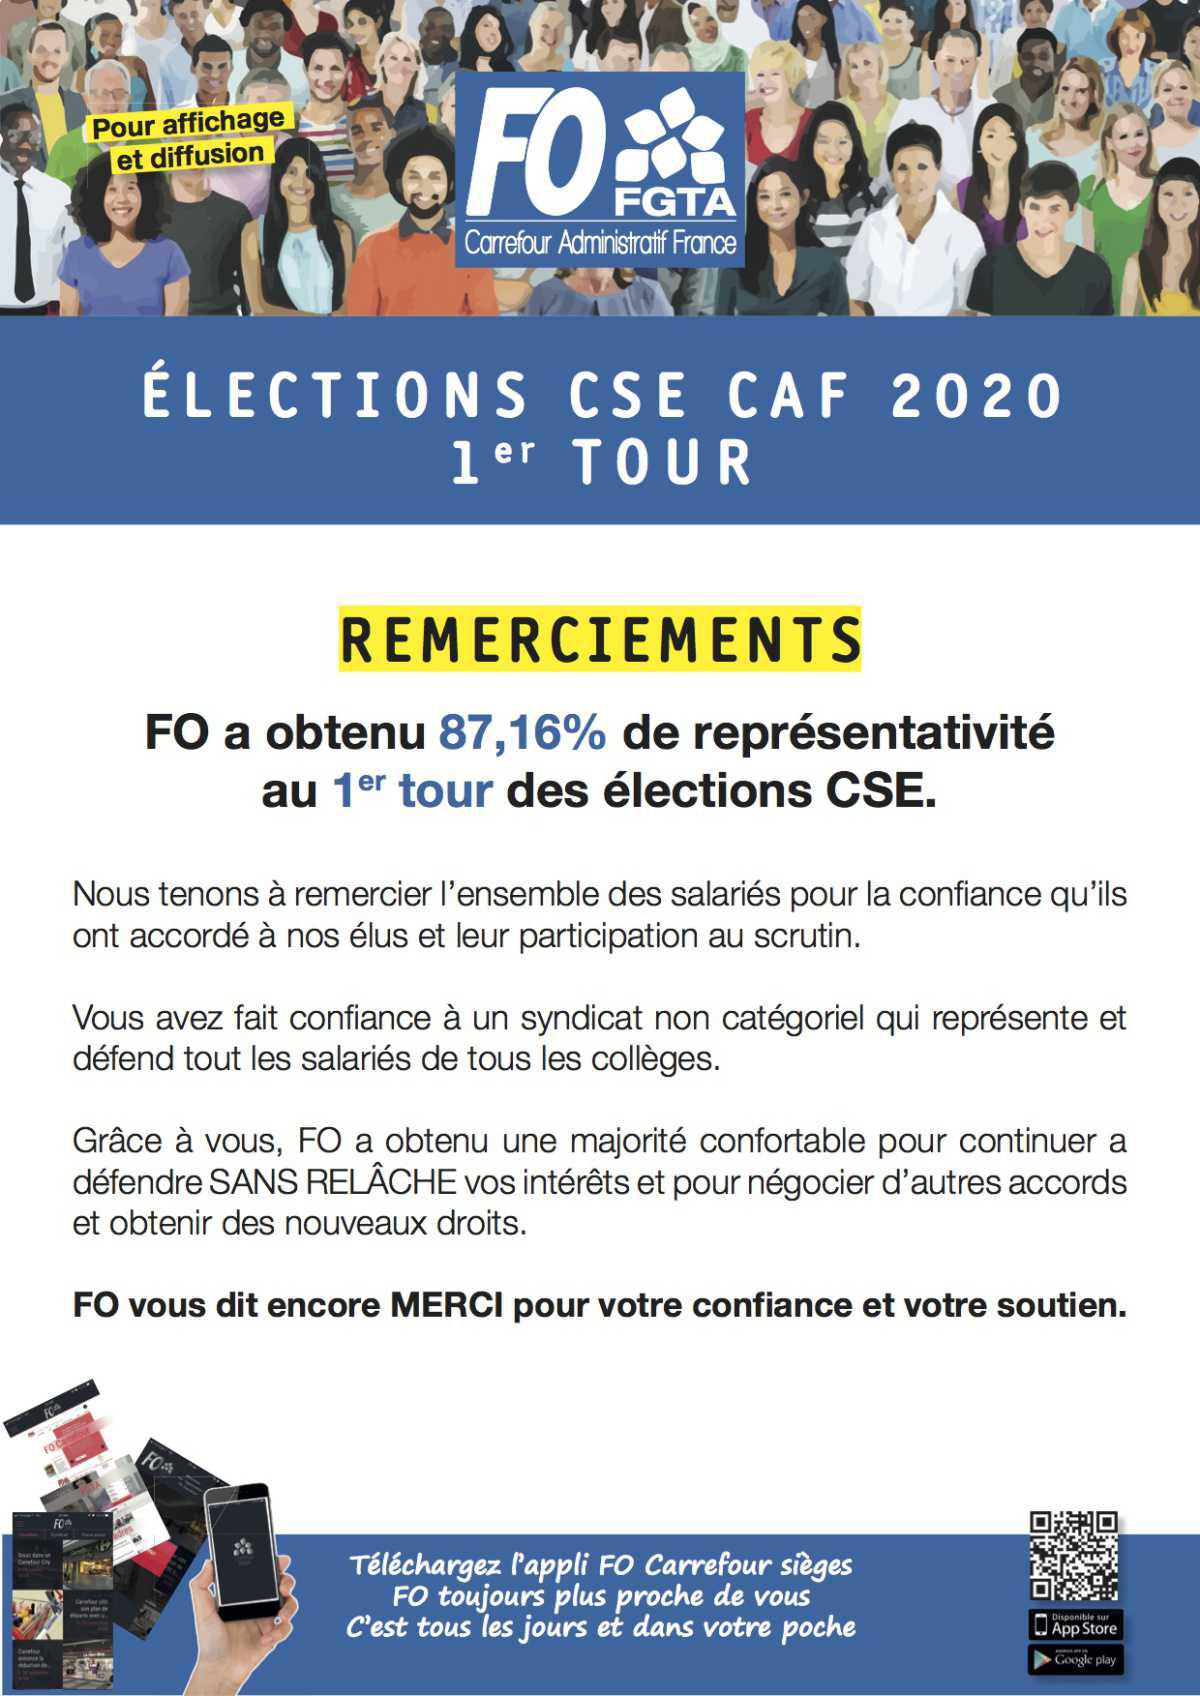 Résultats des élections CSE CAF 2020 1er tour!